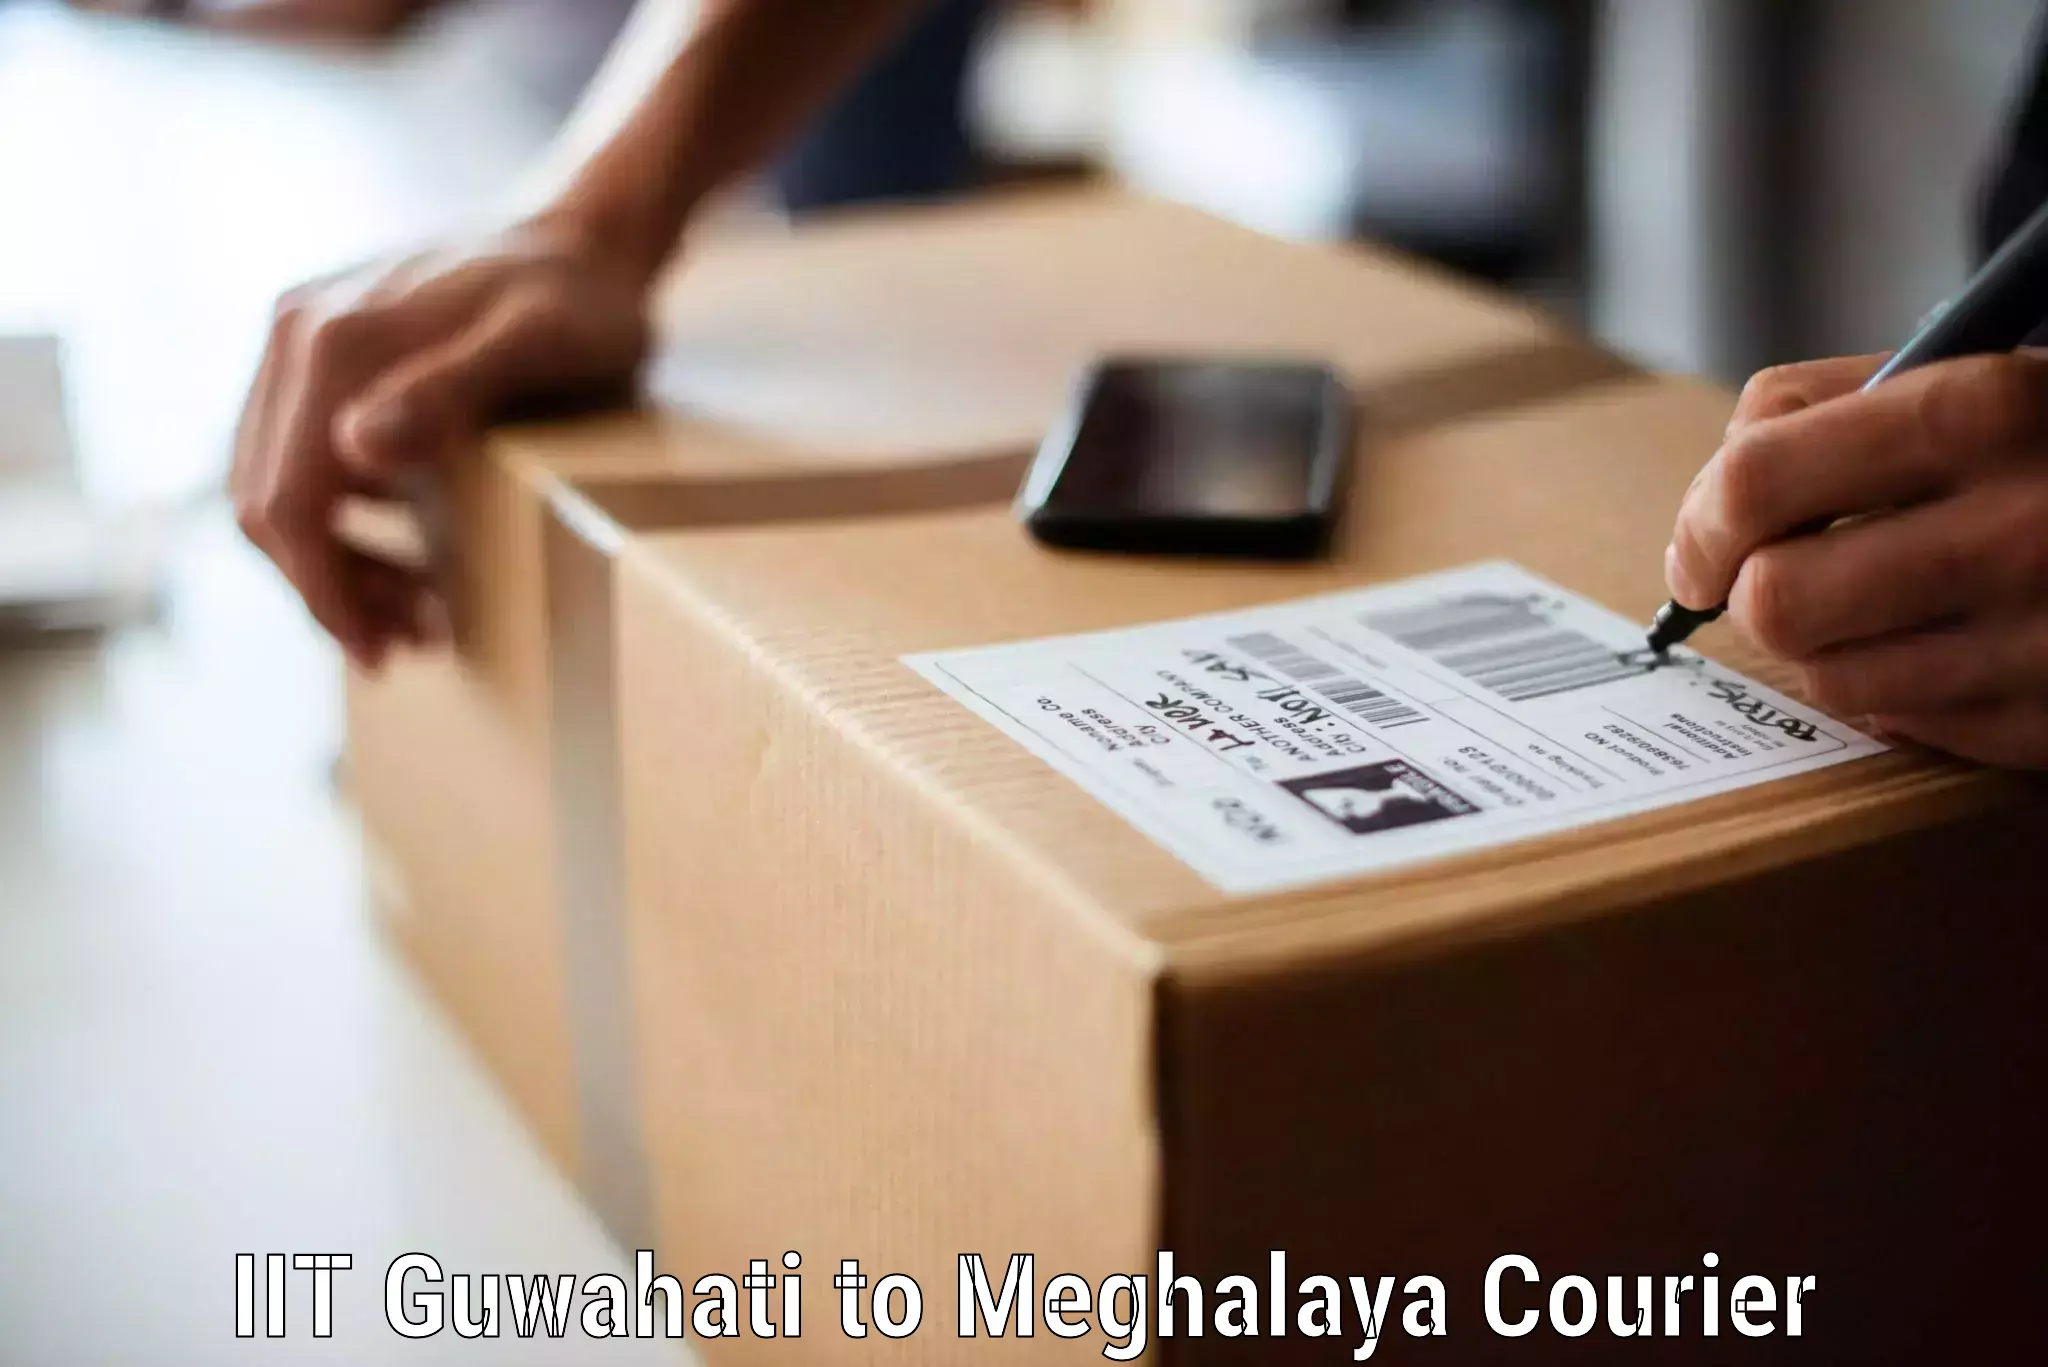 Efficient furniture transport IIT Guwahati to Meghalaya